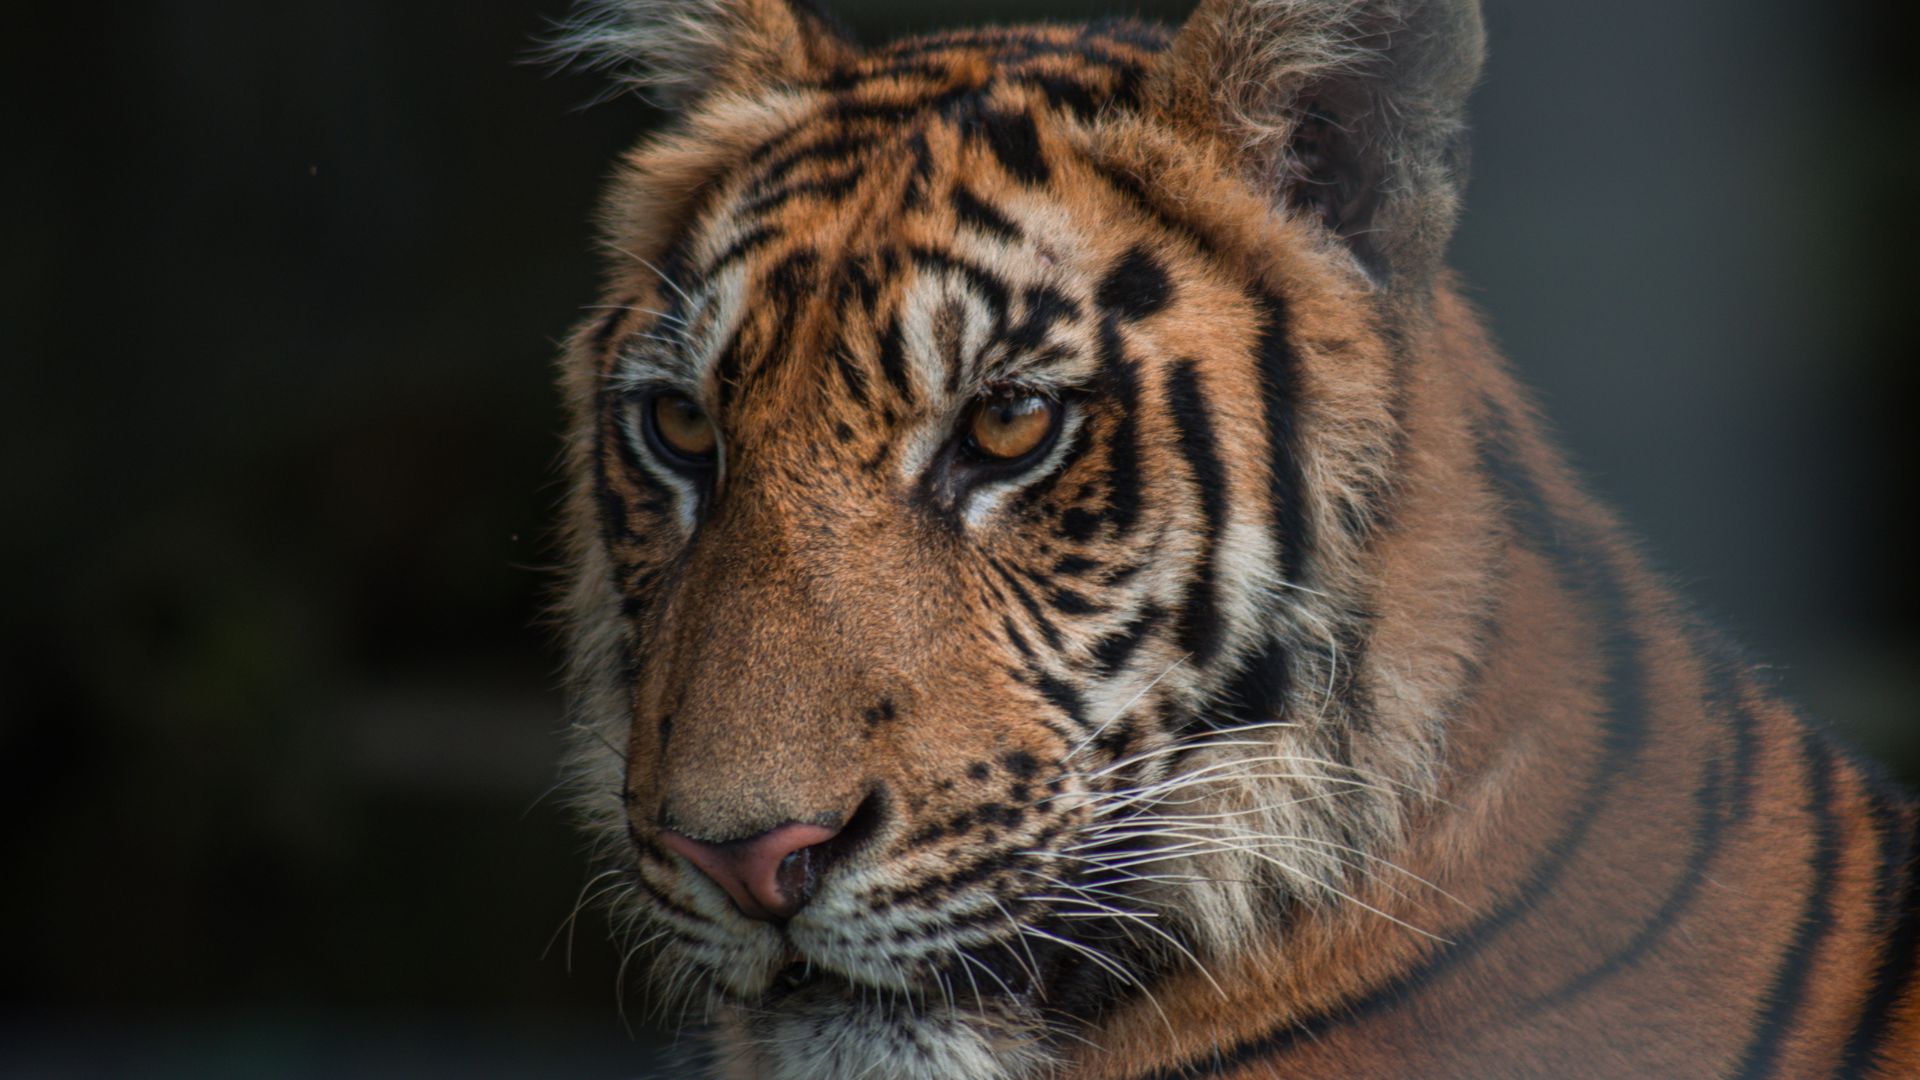 Image shows tiger at zoo